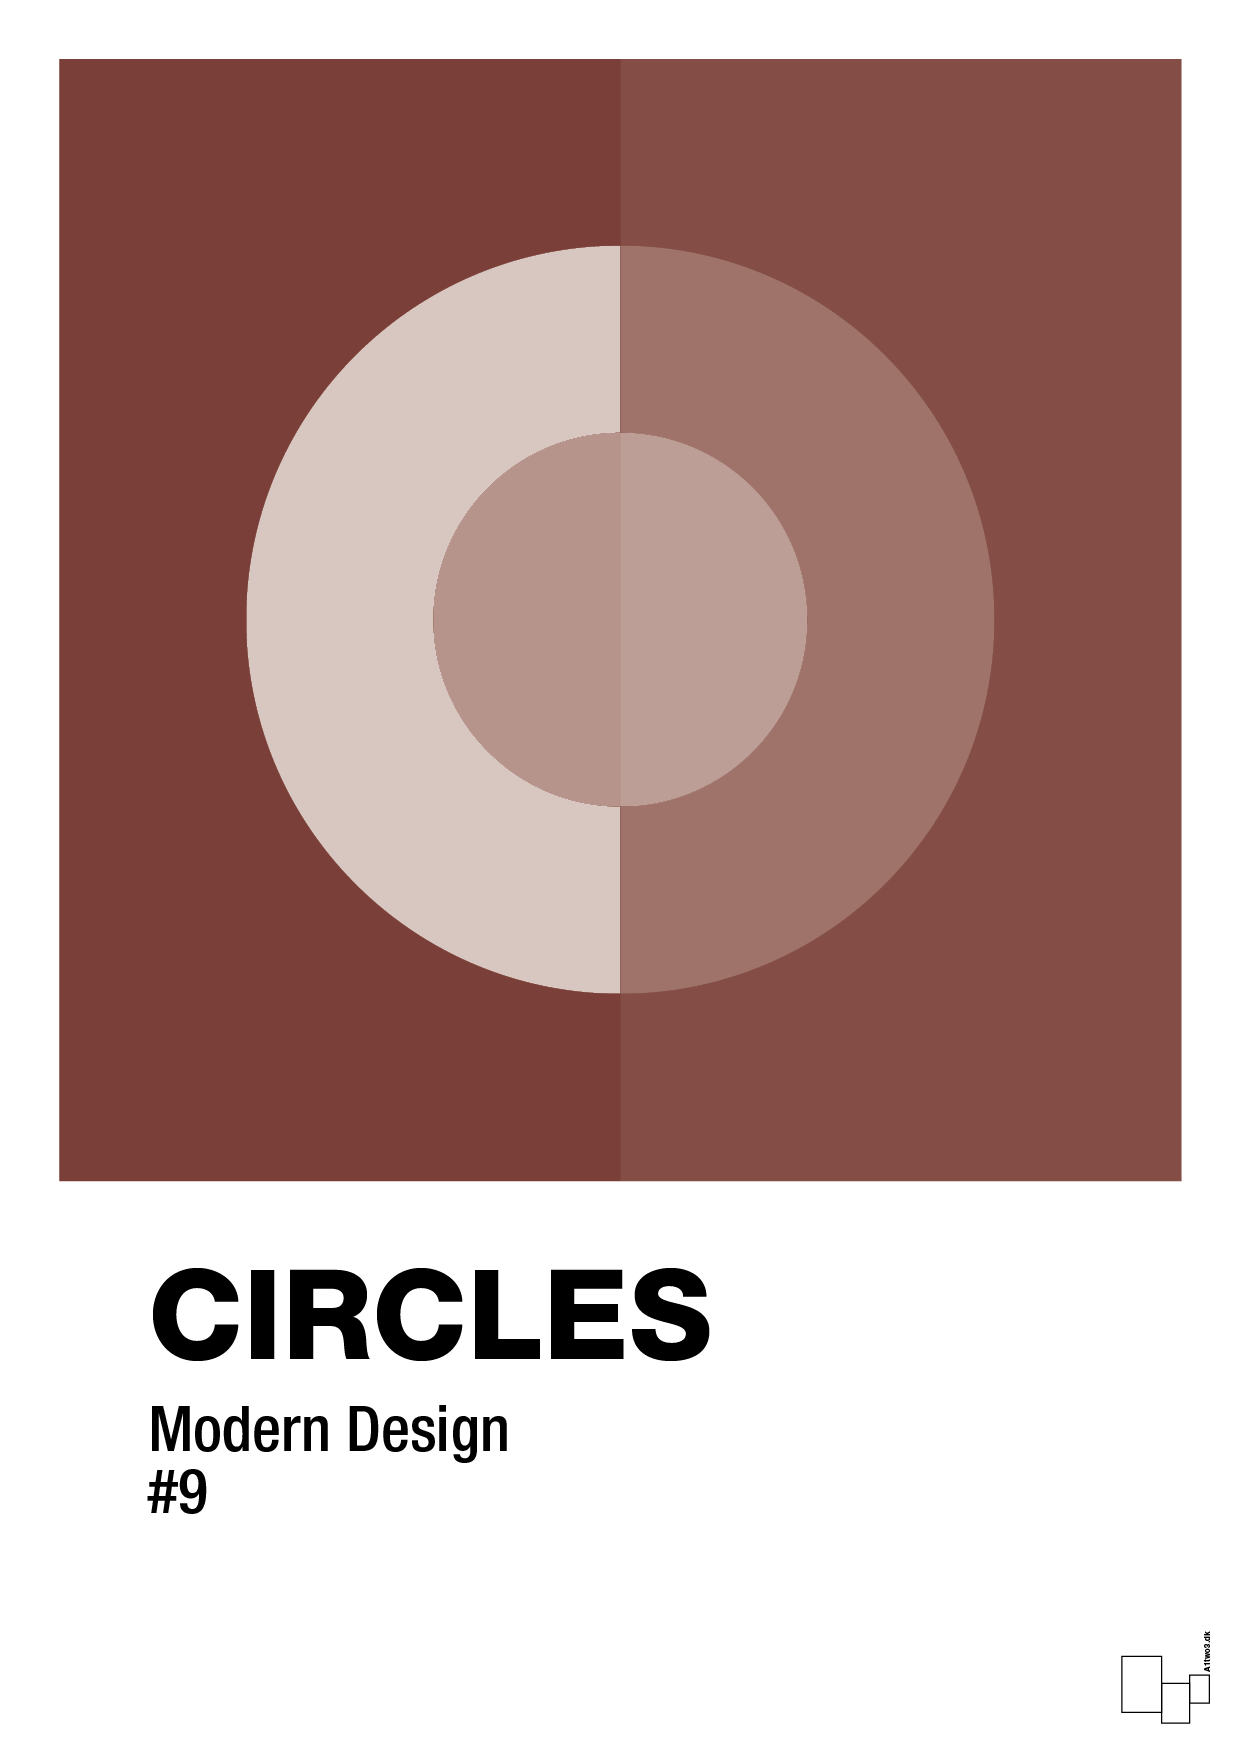 circles #9 - Plakat med Grafik i Red Pepper